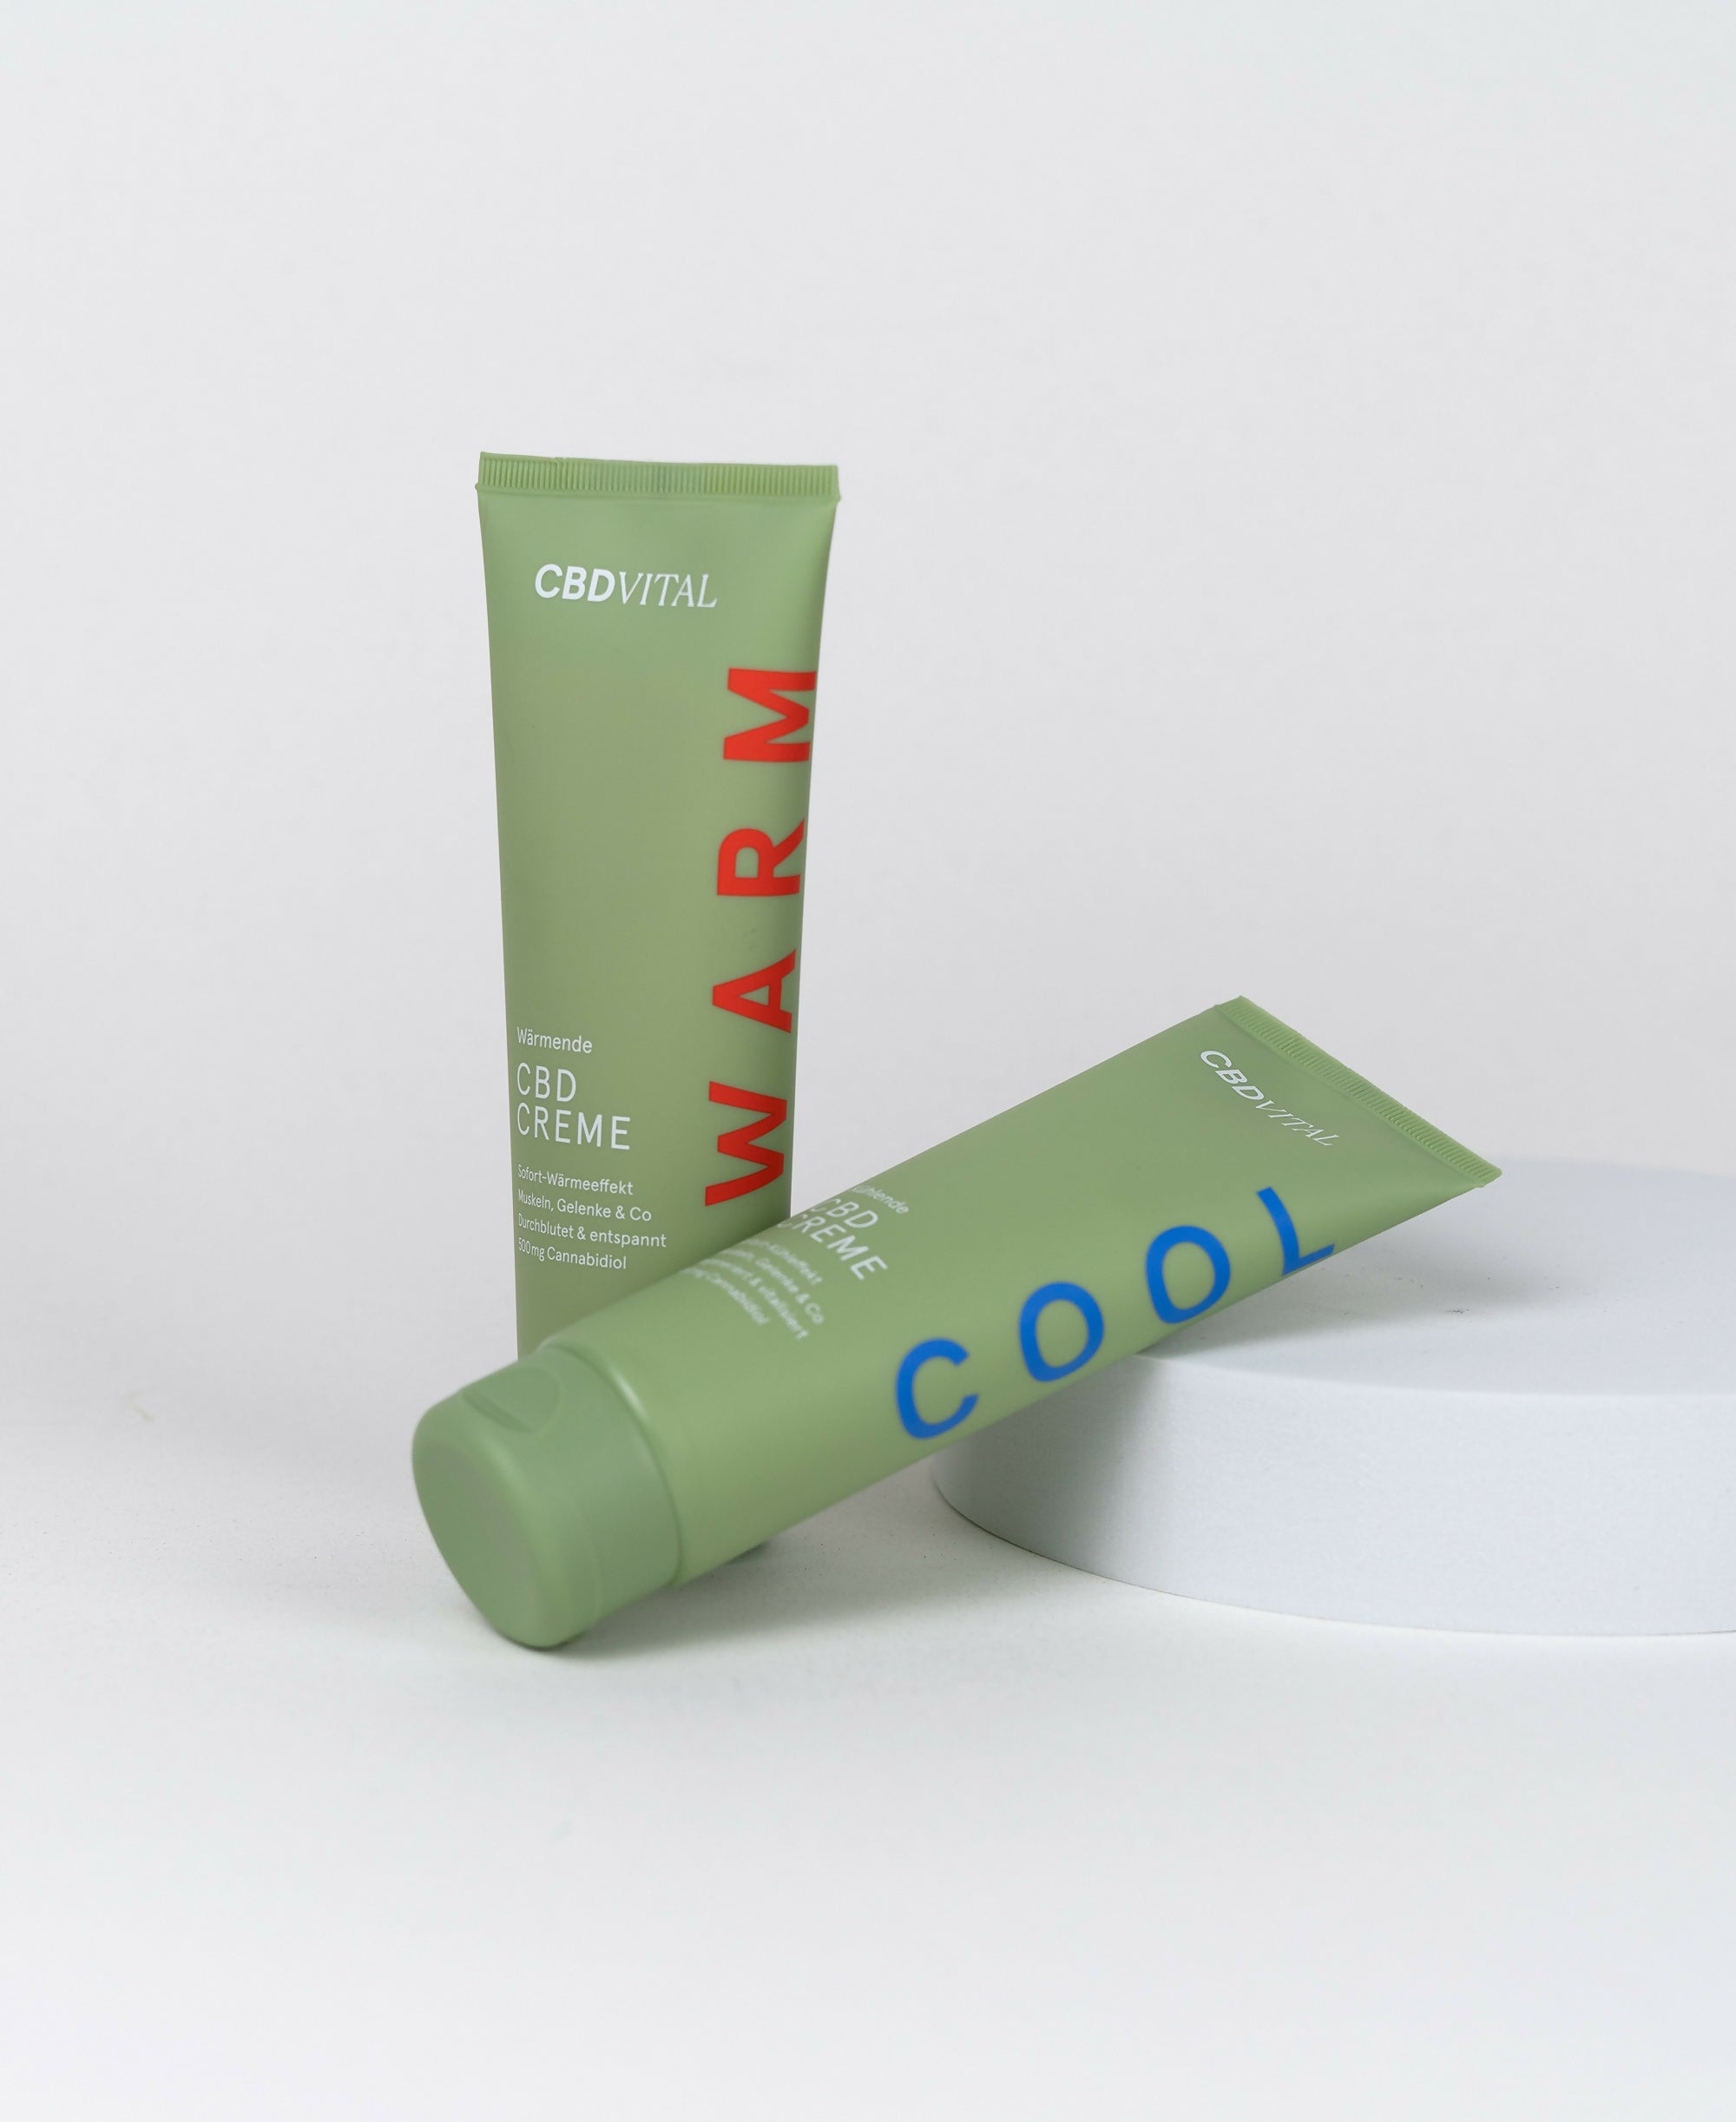 Cooling CBD Cream